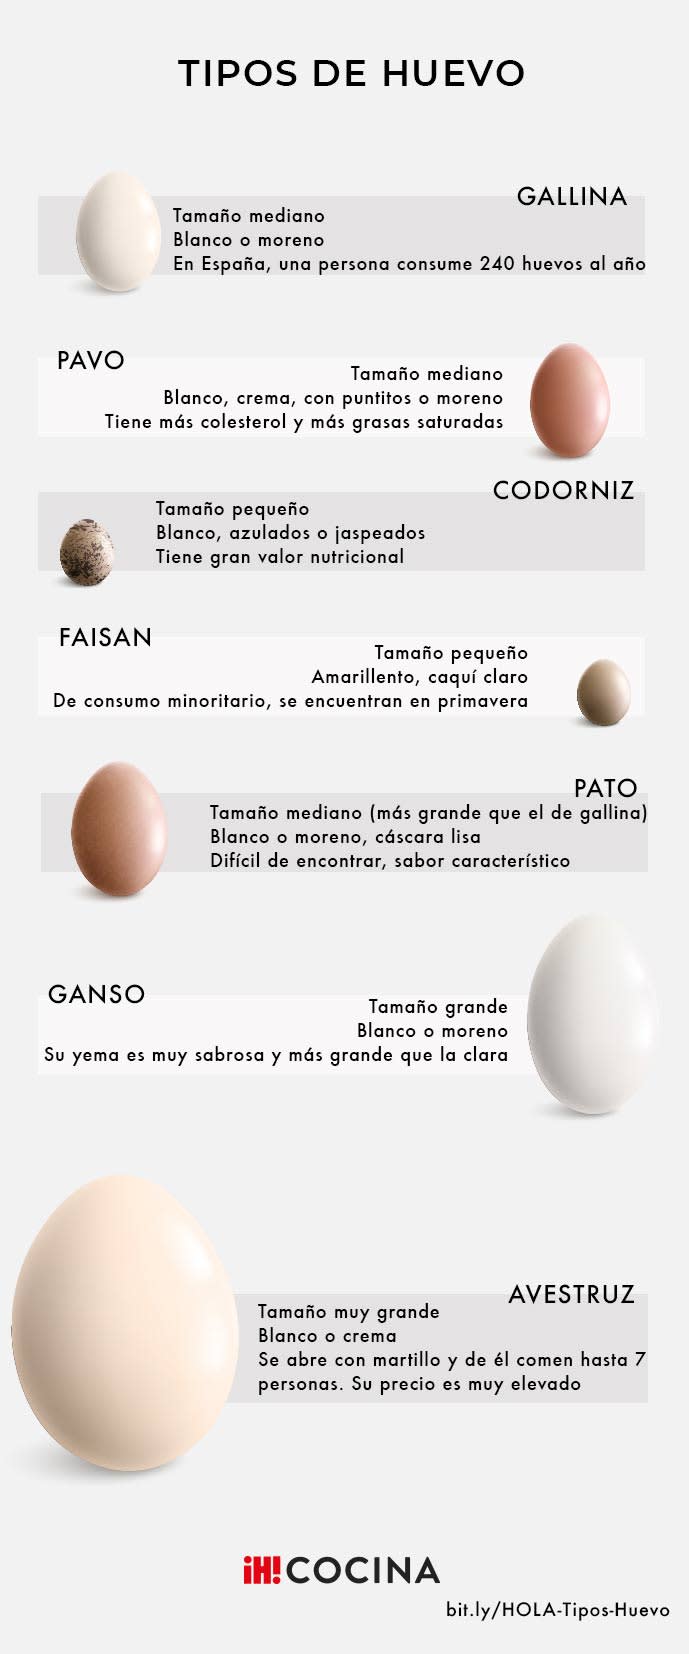 ¿Cuál es el mejor tipo de huevo?